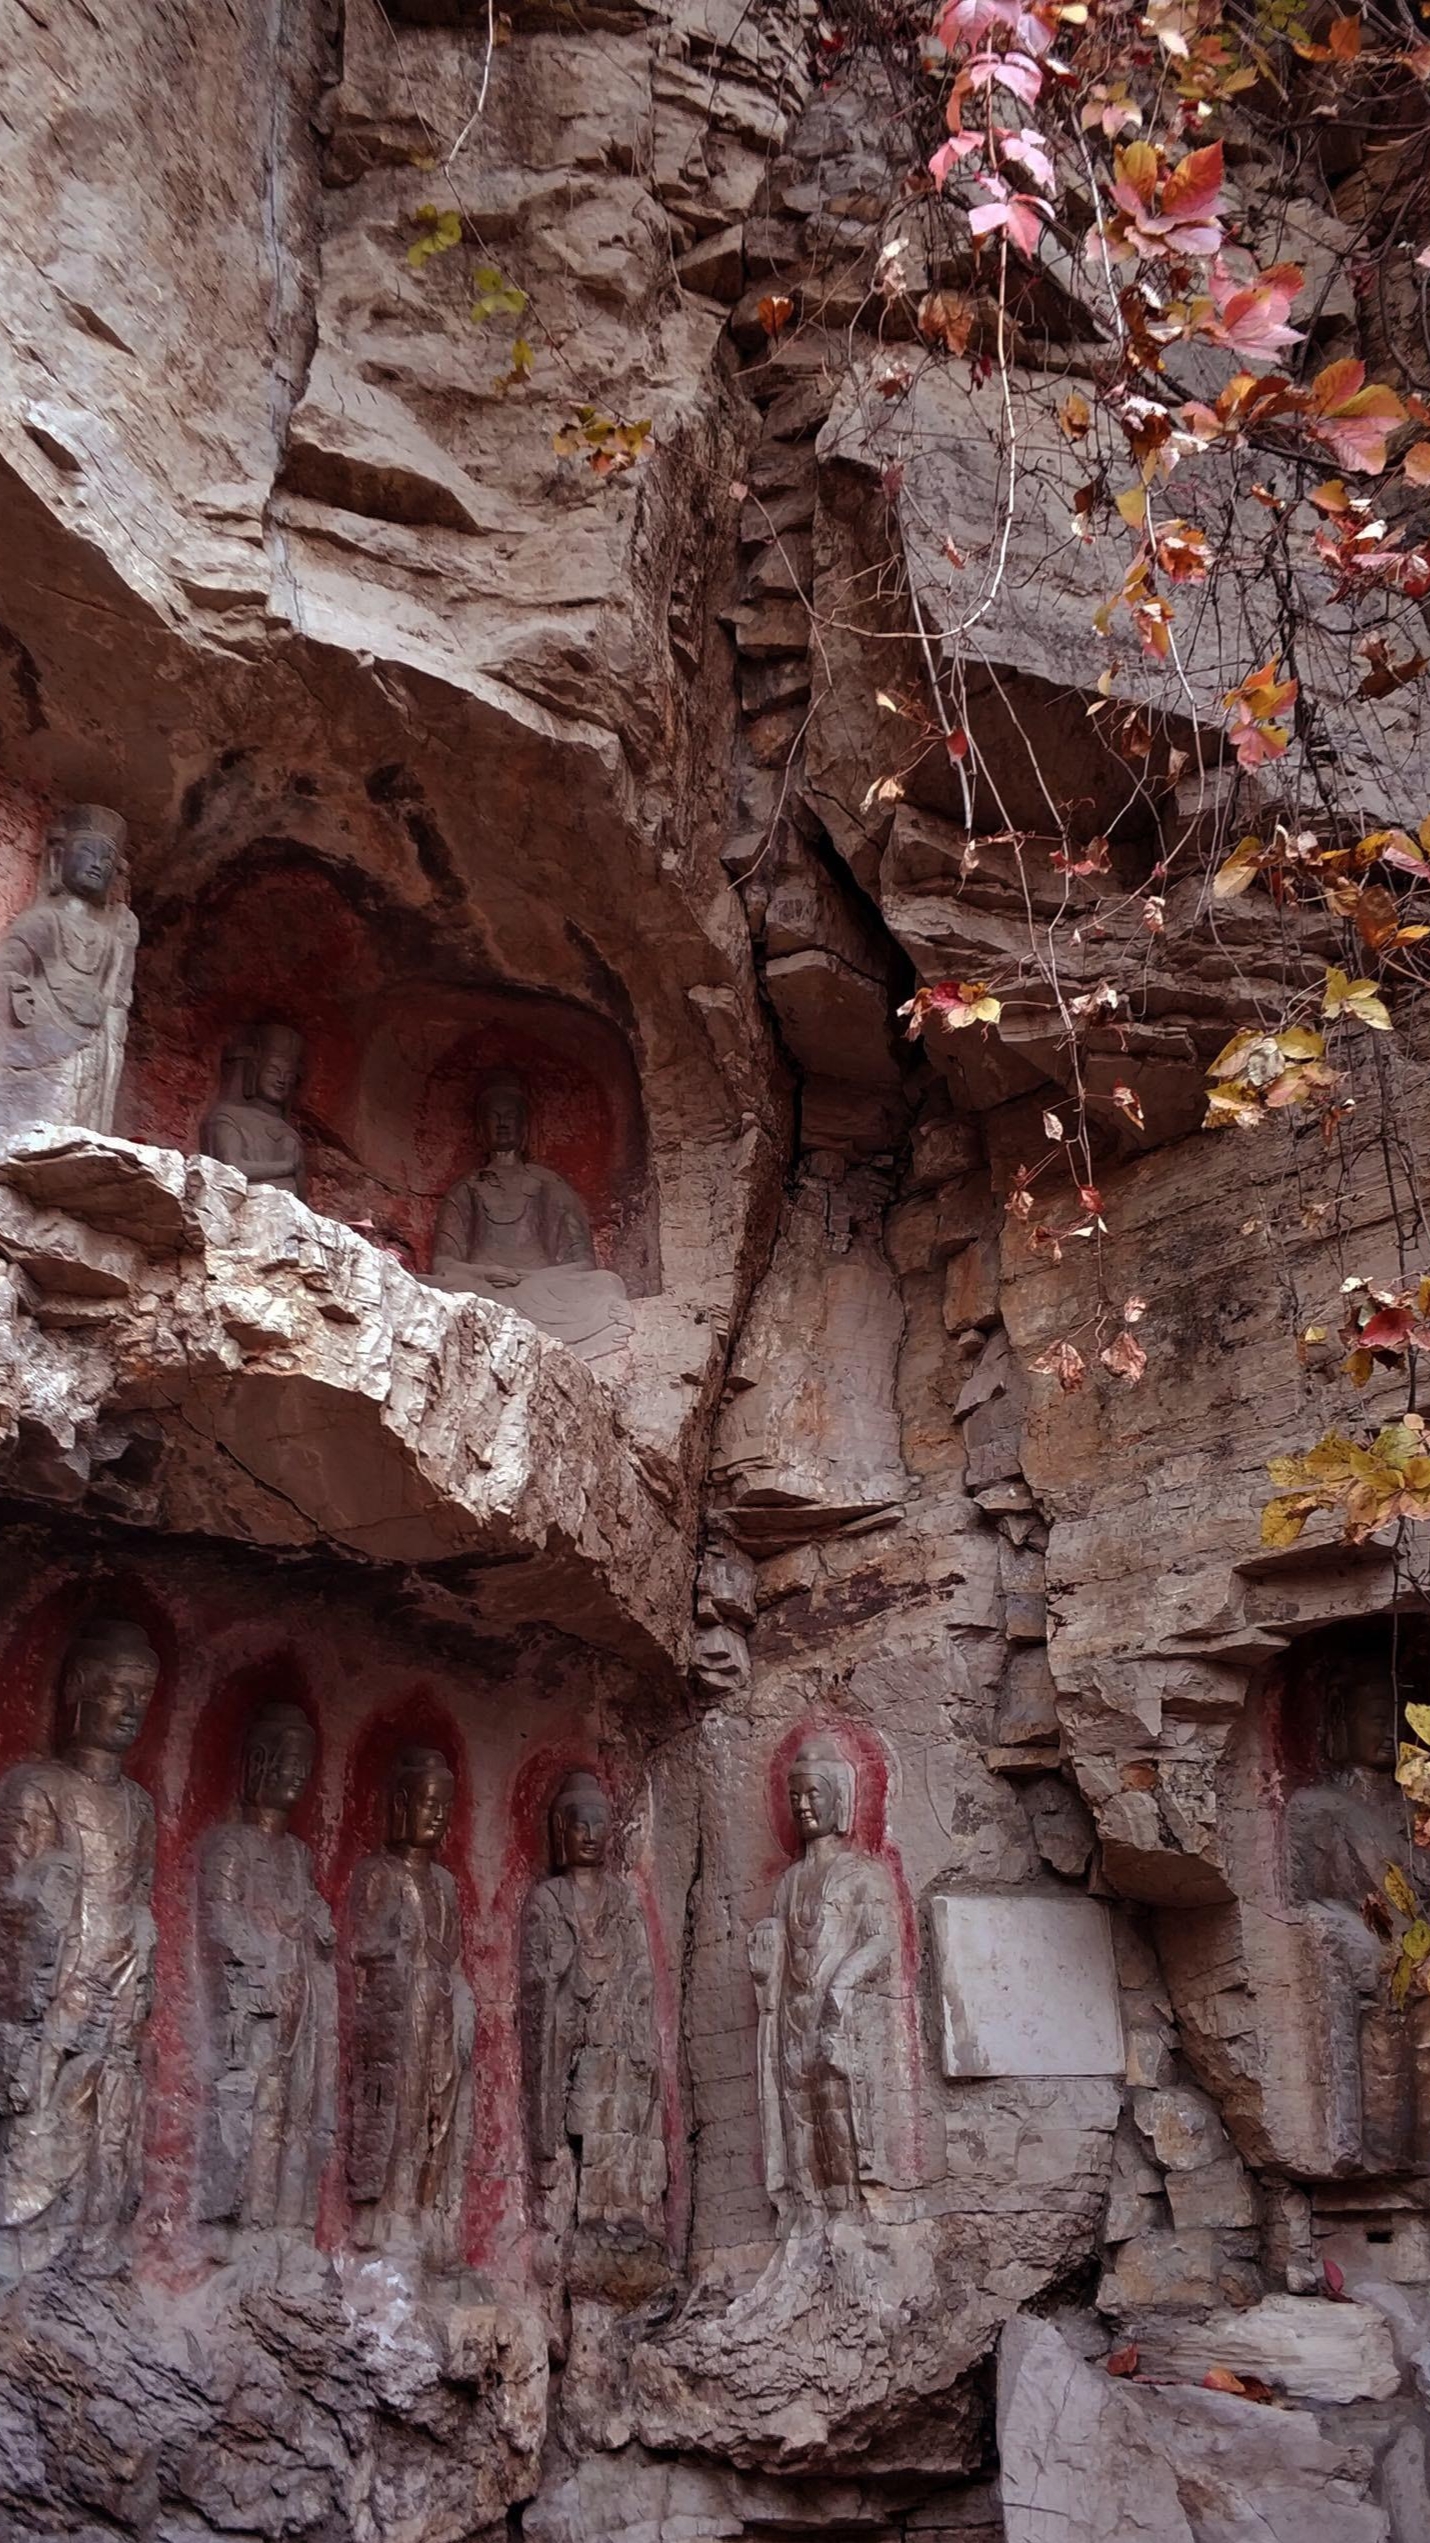 位于千佛山北麓的万佛洞,则是一处兴建于90年代的大型佛教建筑群.